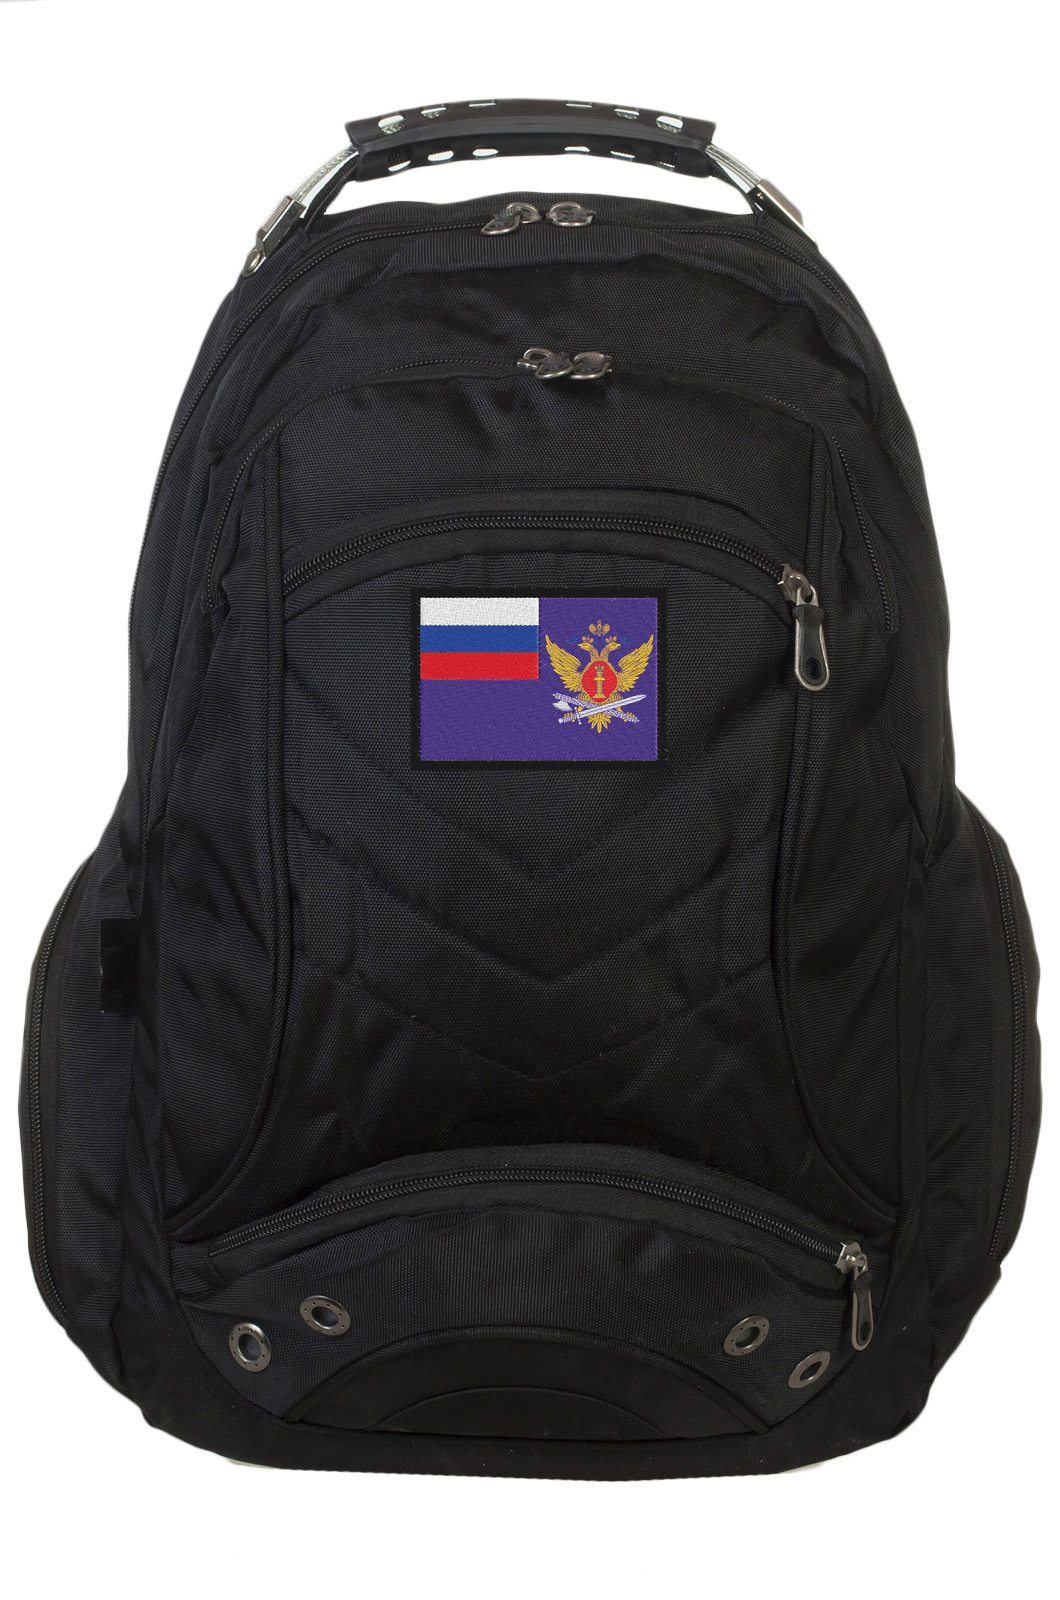 Универсальный городской рюкзак с эмблемой ФСИН заказать в розницу или оптом